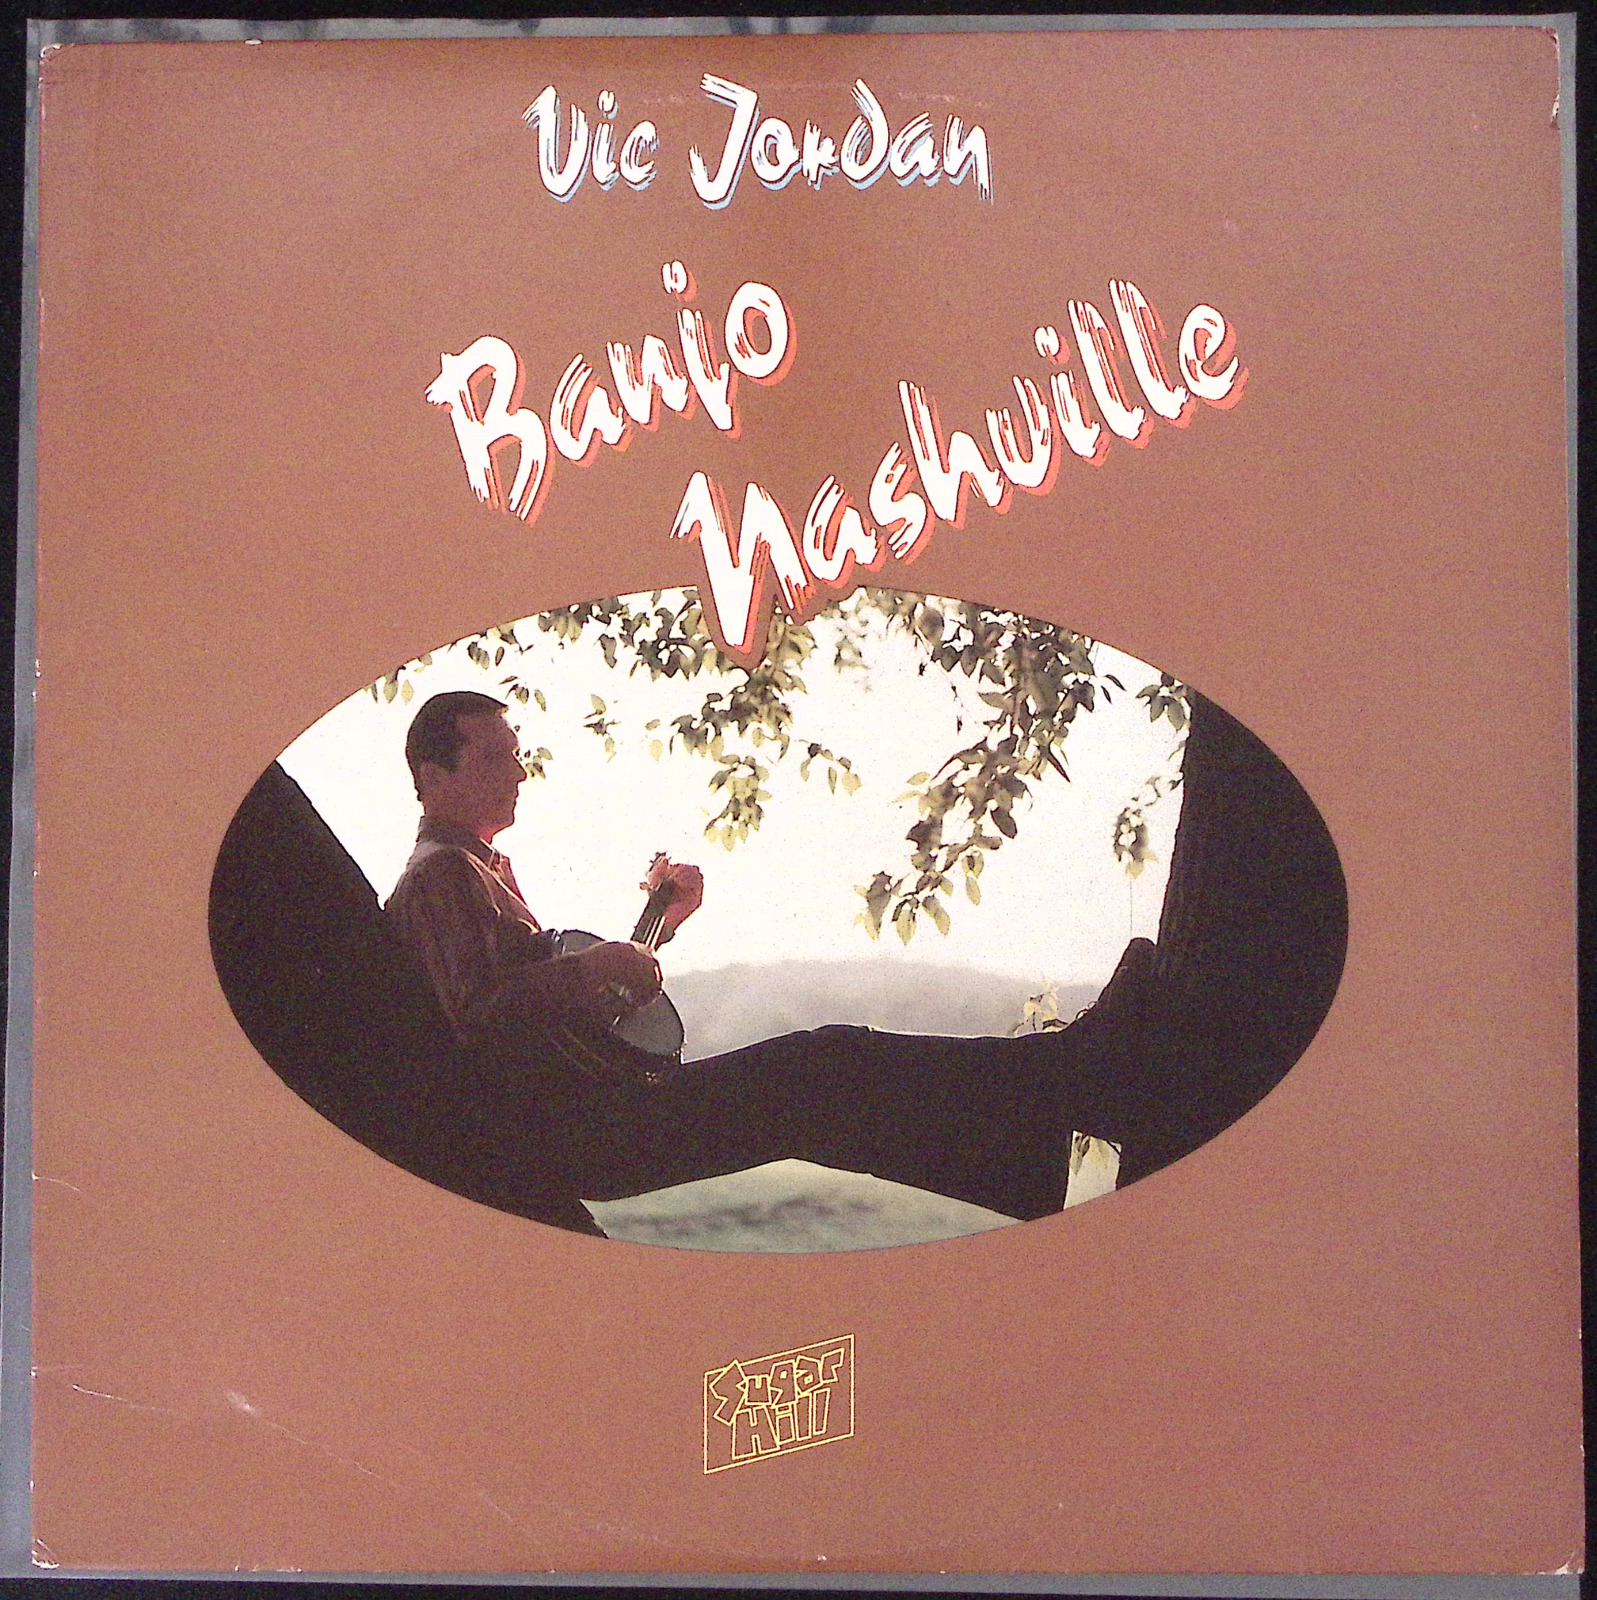 VIC JORDAN BANJO NASHVILLE SUGAR HILL RECORDS VINYL LP 157-76W